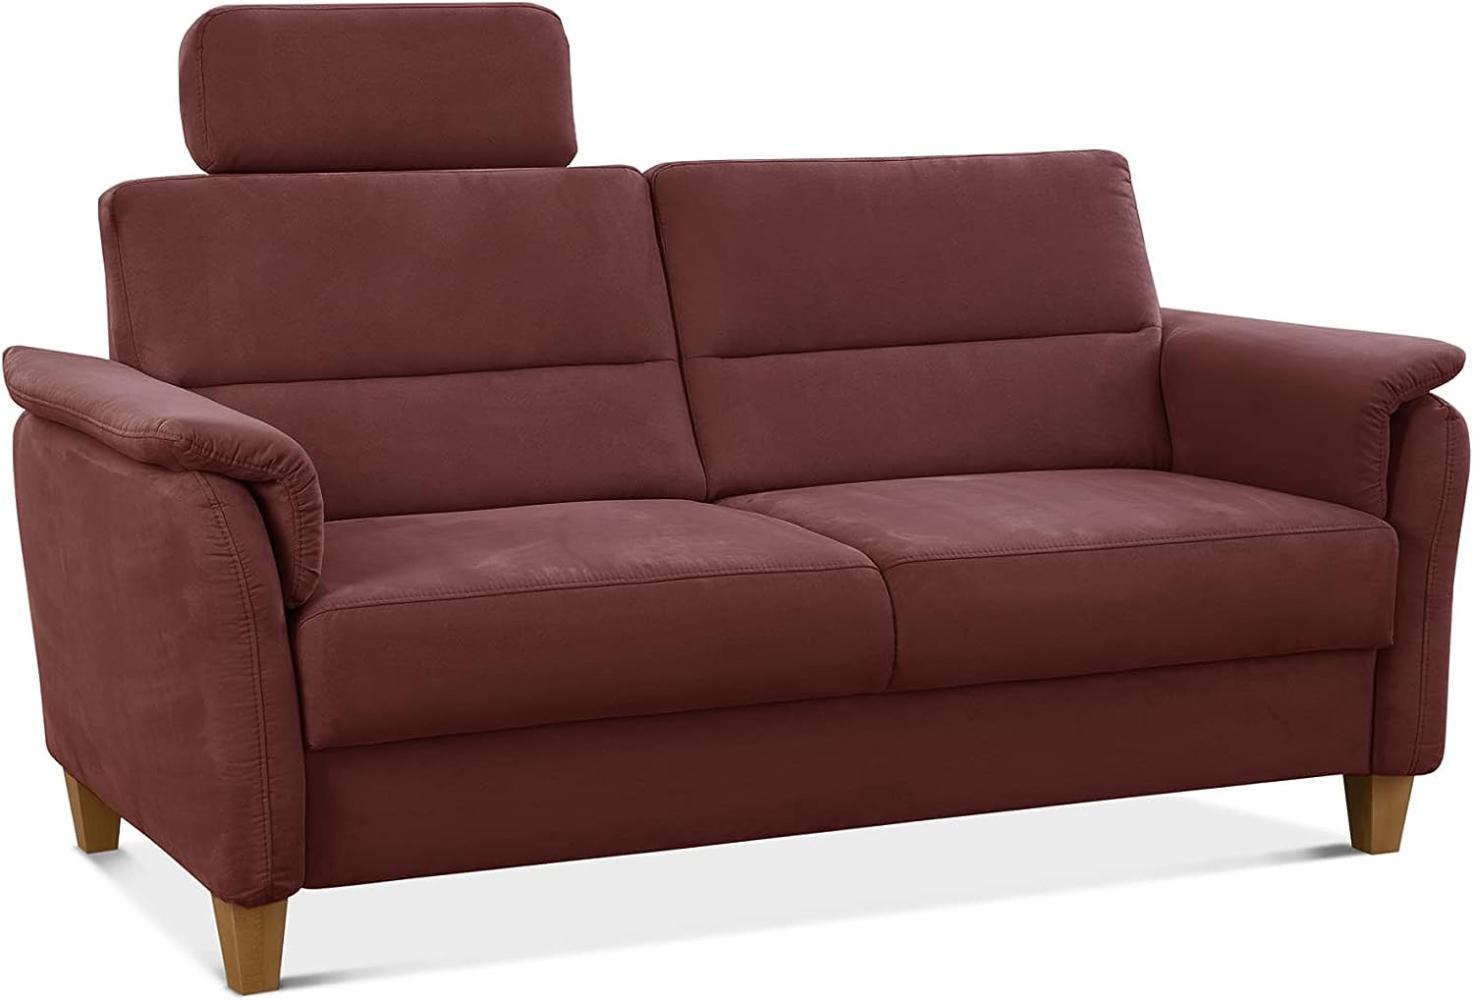 CAVADORE 3er-Sofa Palera mit Federkern / Kompakte Dreisitzer-Couch im Landhaus-Stil / inkl. 1 Kopfstütze / 179 x 89 x 89 / Mikrofaser, Rot Bild 1